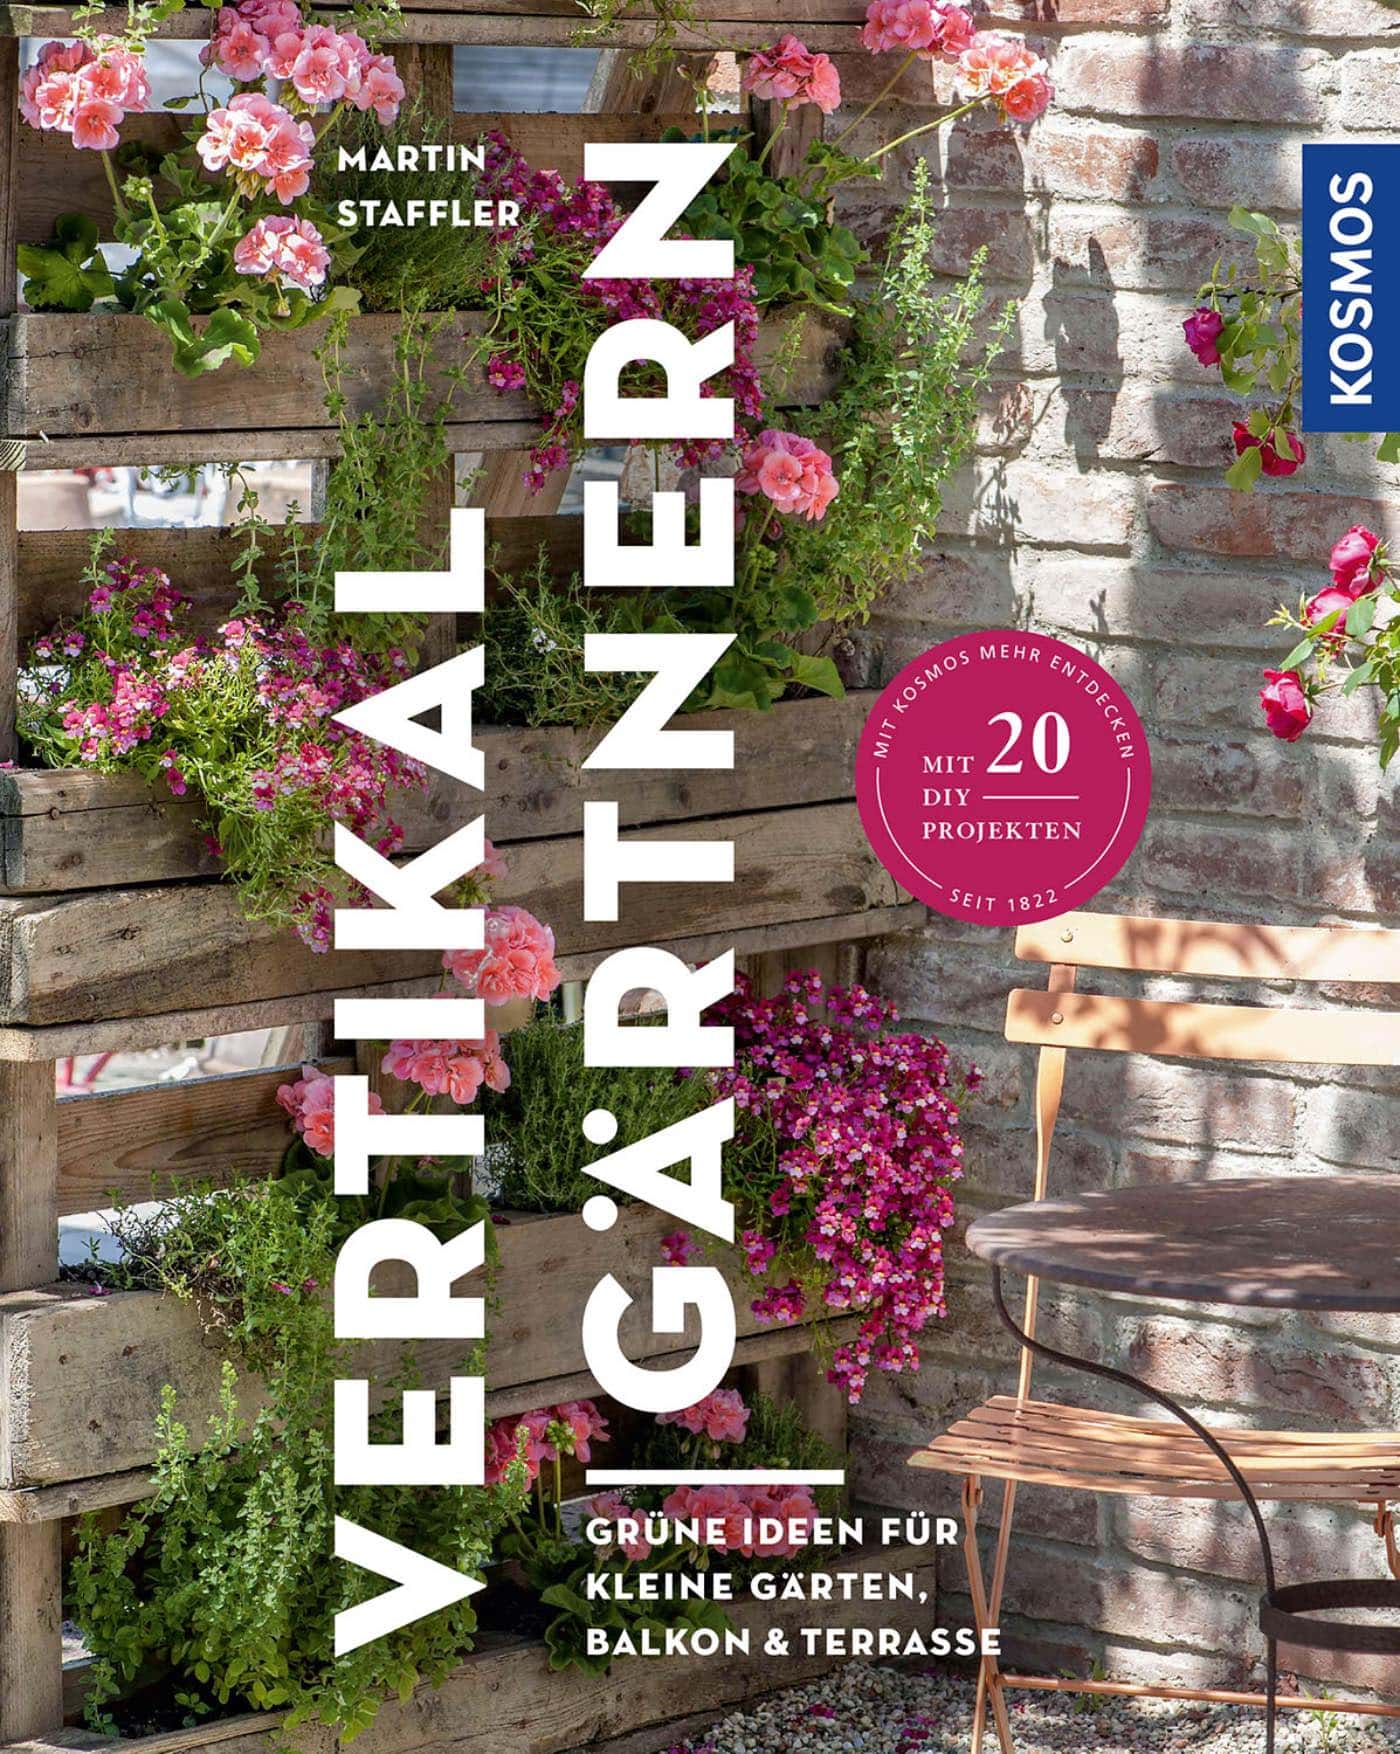 Vertikal Gärtnern – DIY-Palettenbeet und mehr gute Gartenideen für kleinen Raum // HIMBEER